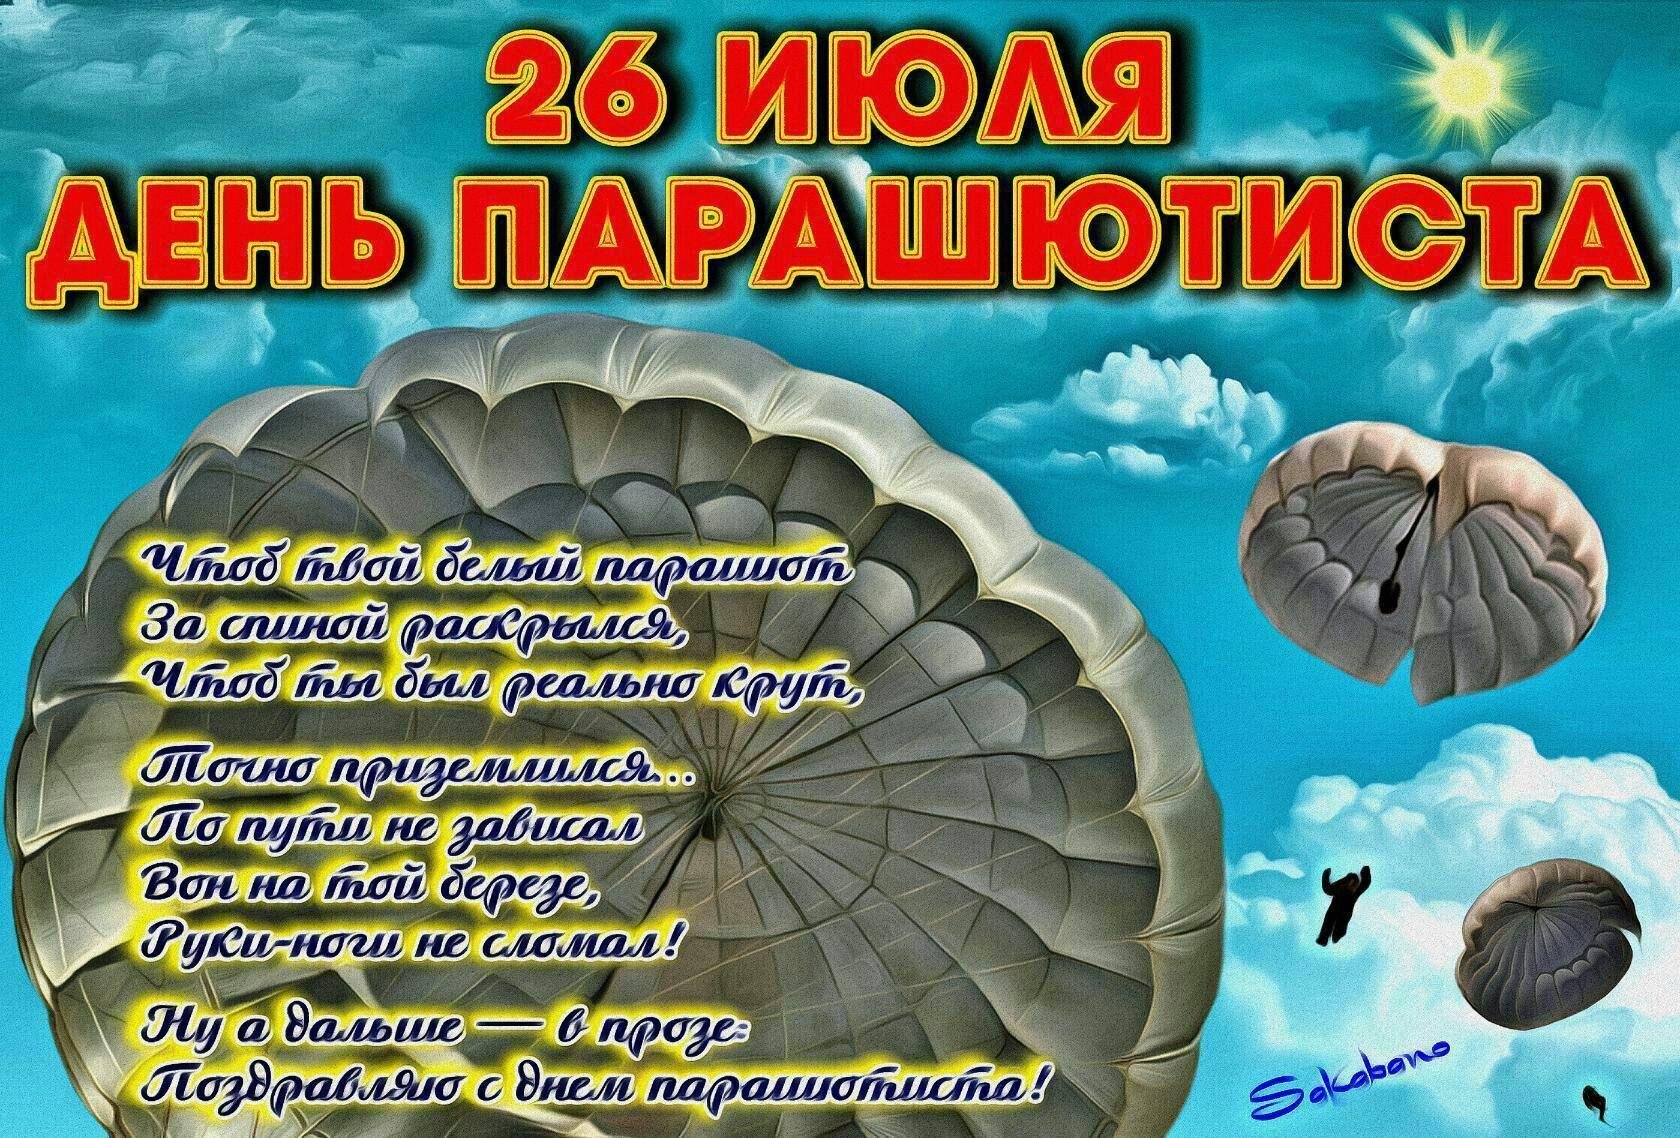 26 июля на 1. День парашютиста. 26 Июля день парашютиста. День парашютиста поздравления. День парашютиста открытки.